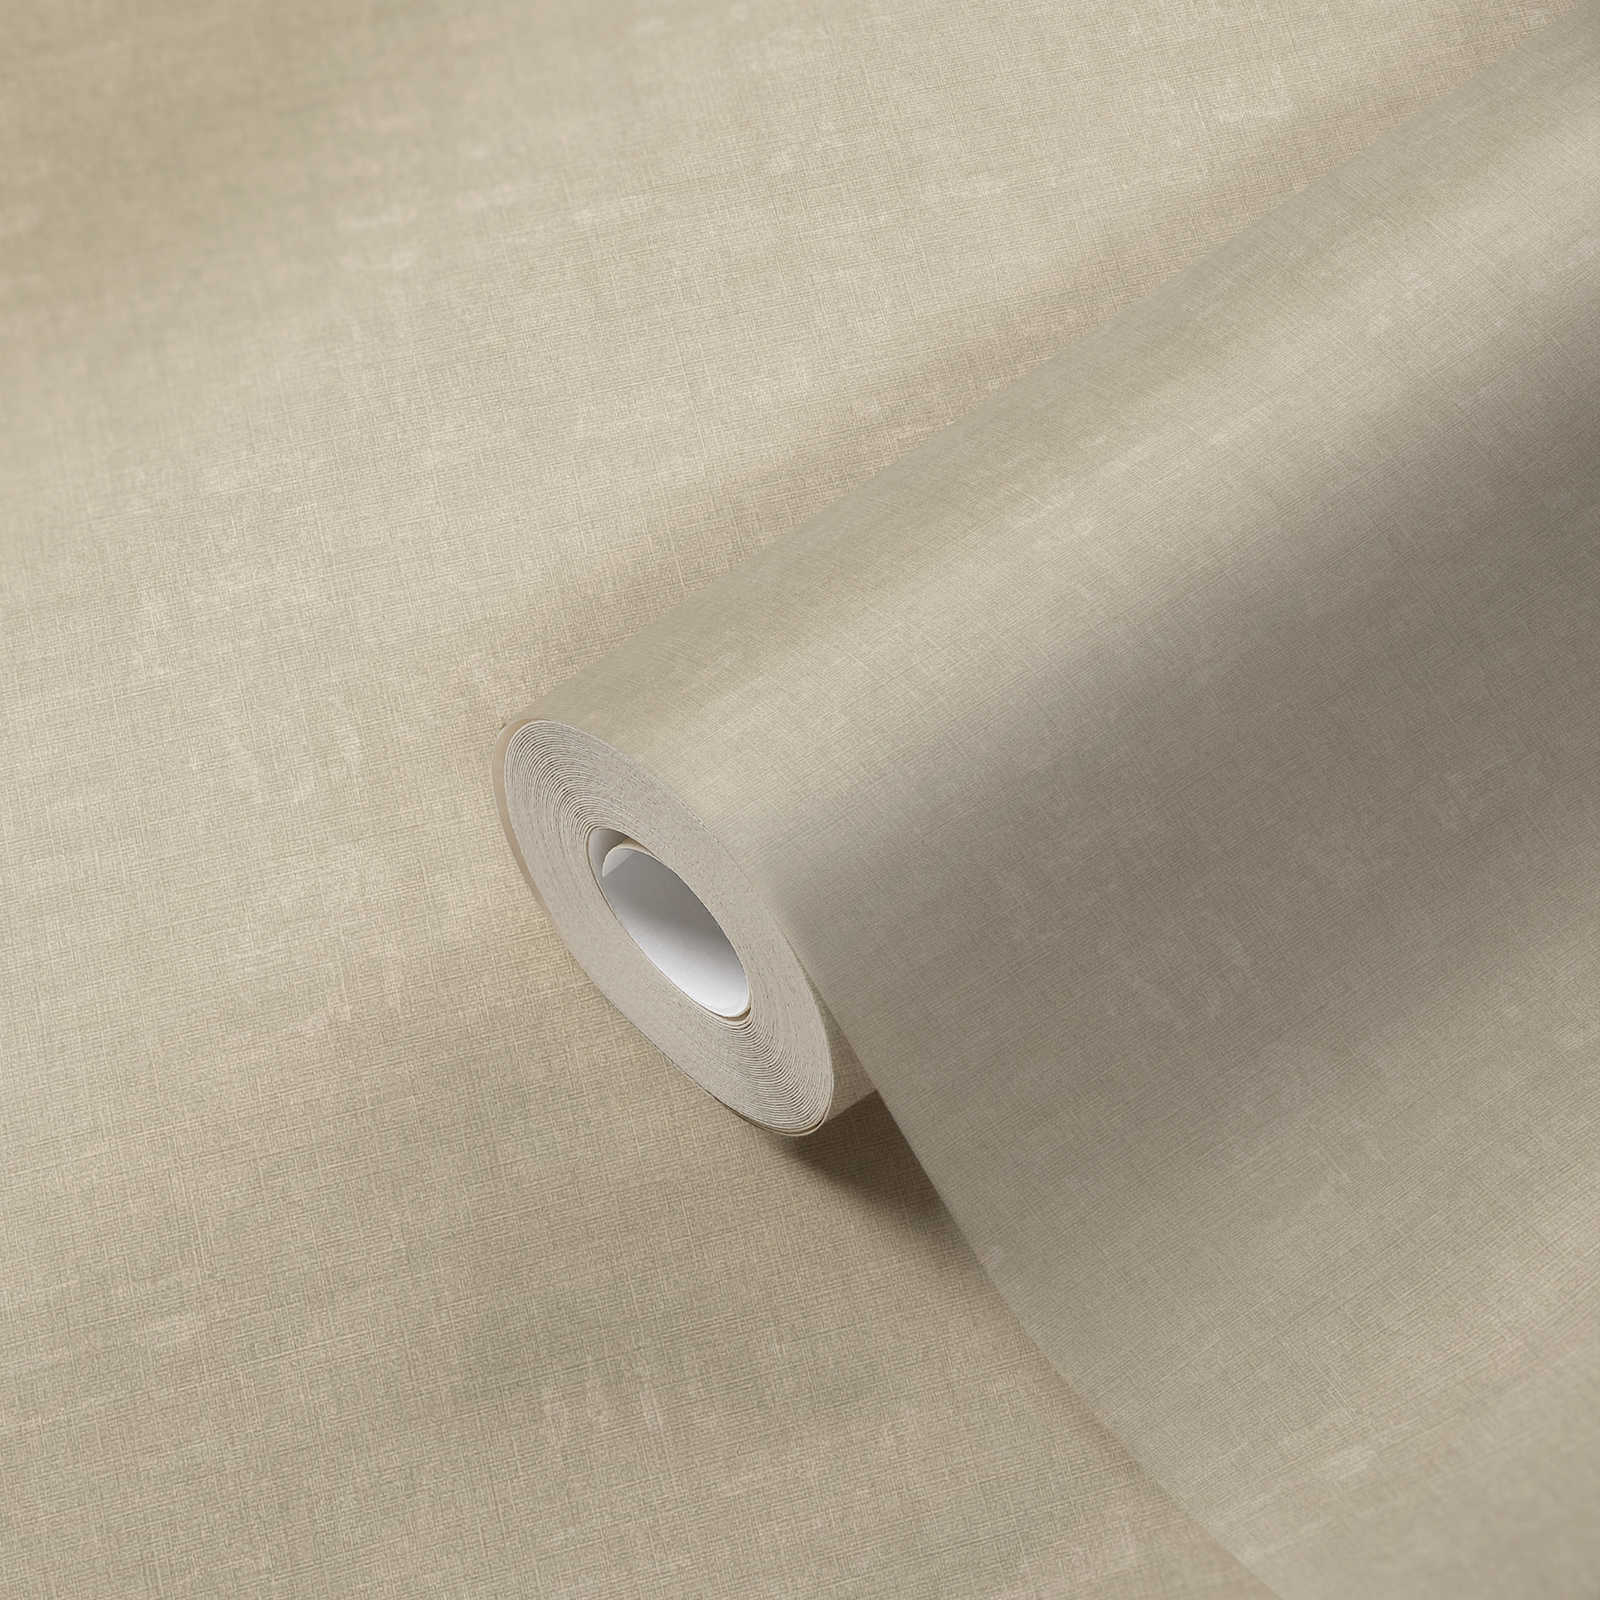             Gemêleerd behang effen met structuurdesign - grijs, beige
        